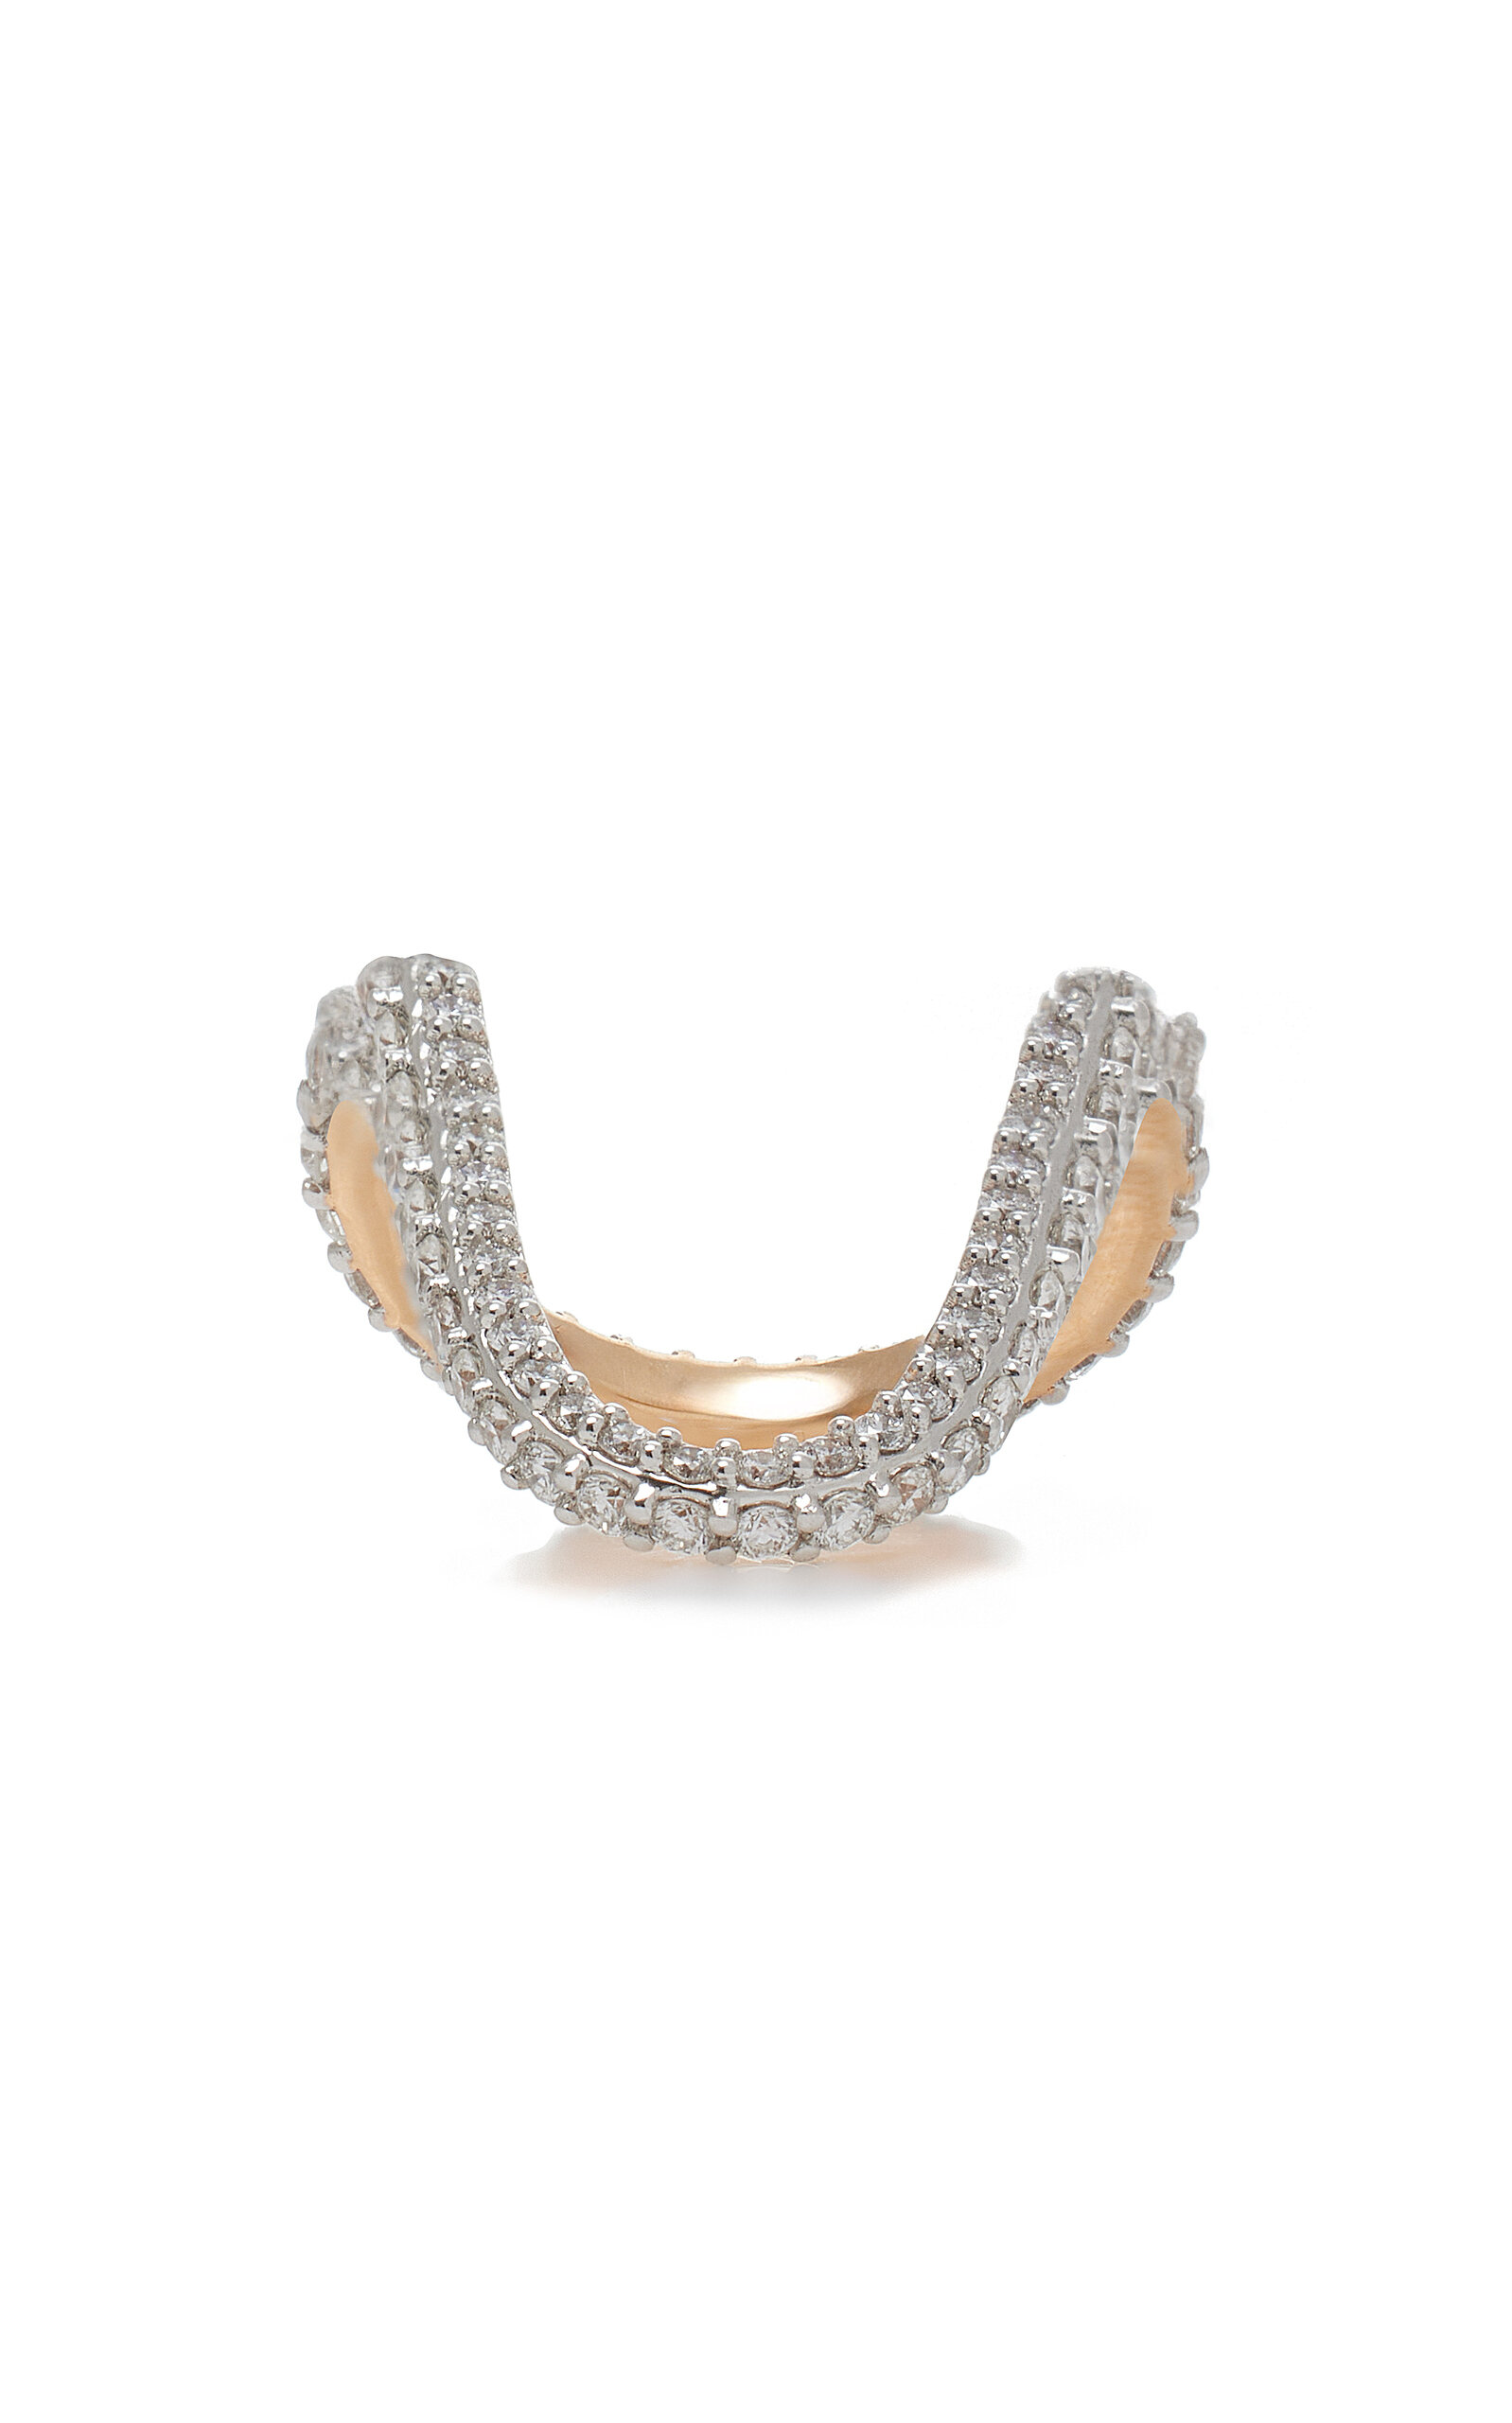 Radiant 18k Rose Gold Diamond Ring